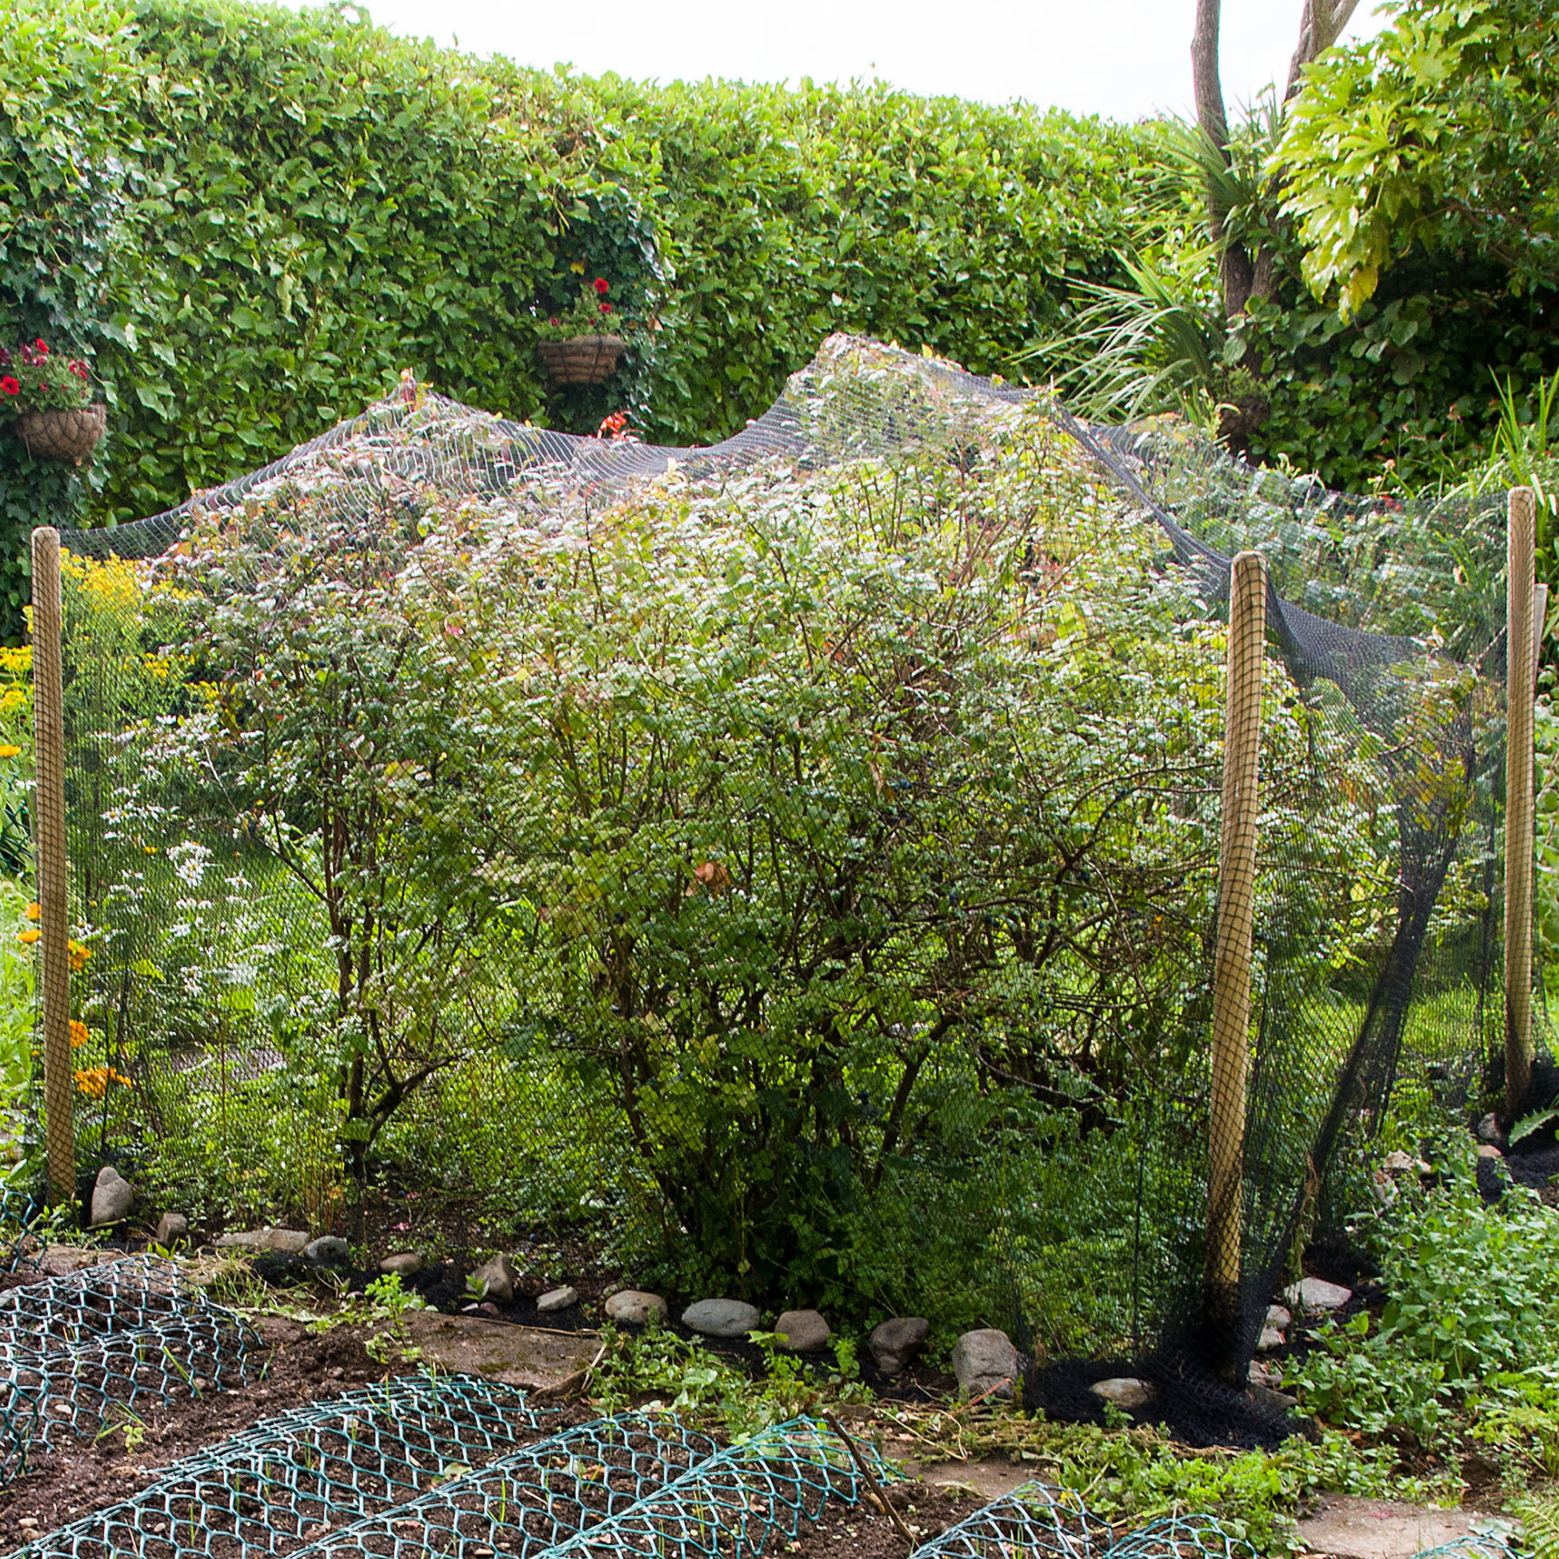 bird netting over vegetable garden